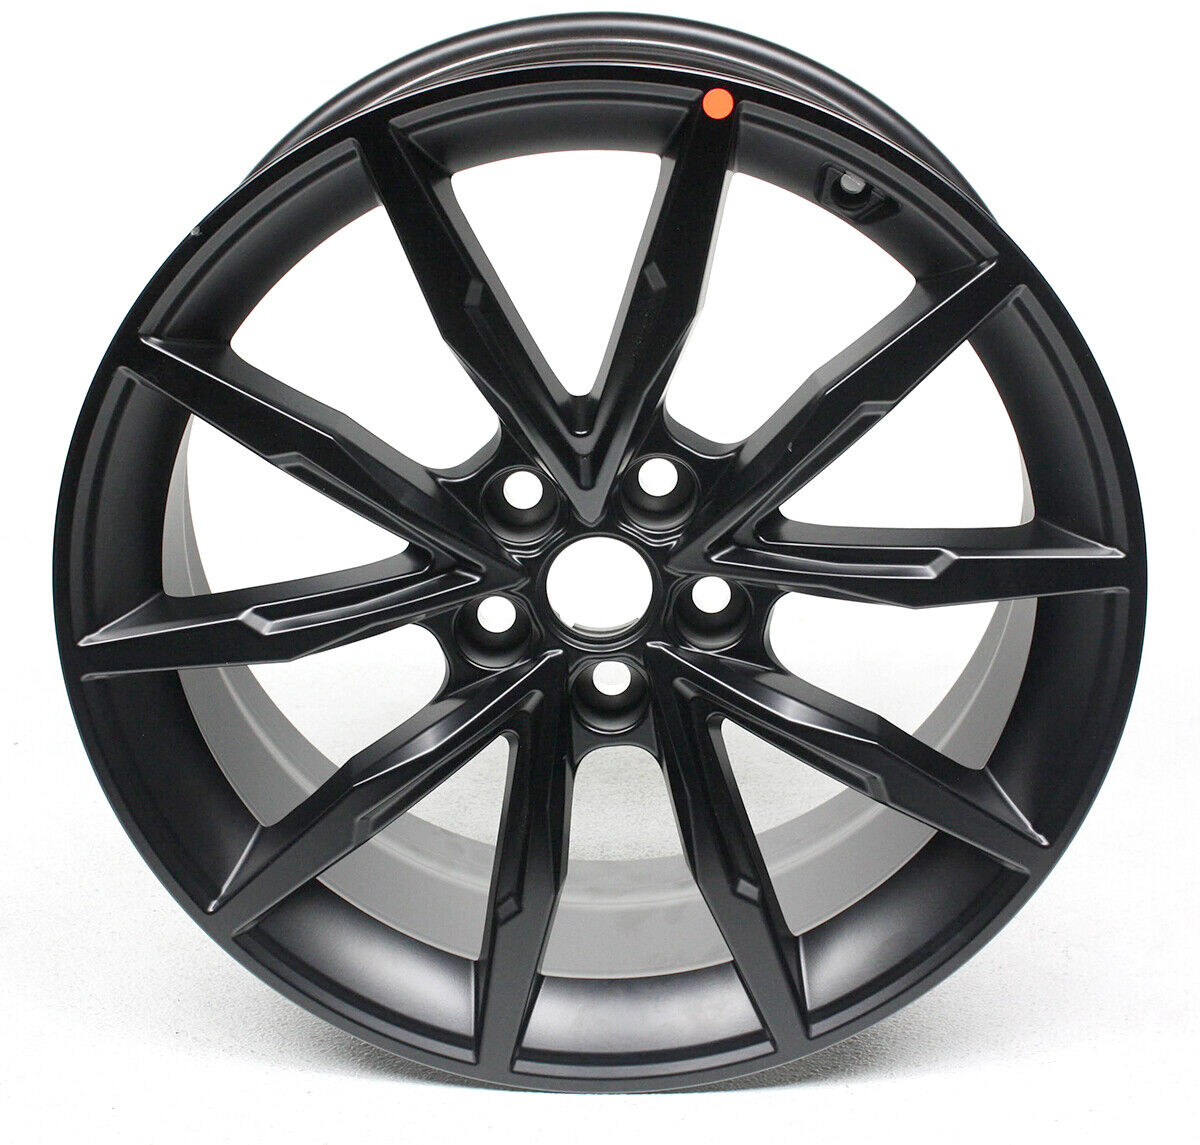 OEM 19 Inch Wheel Rim For KIA Stinger Black J5529-AB100